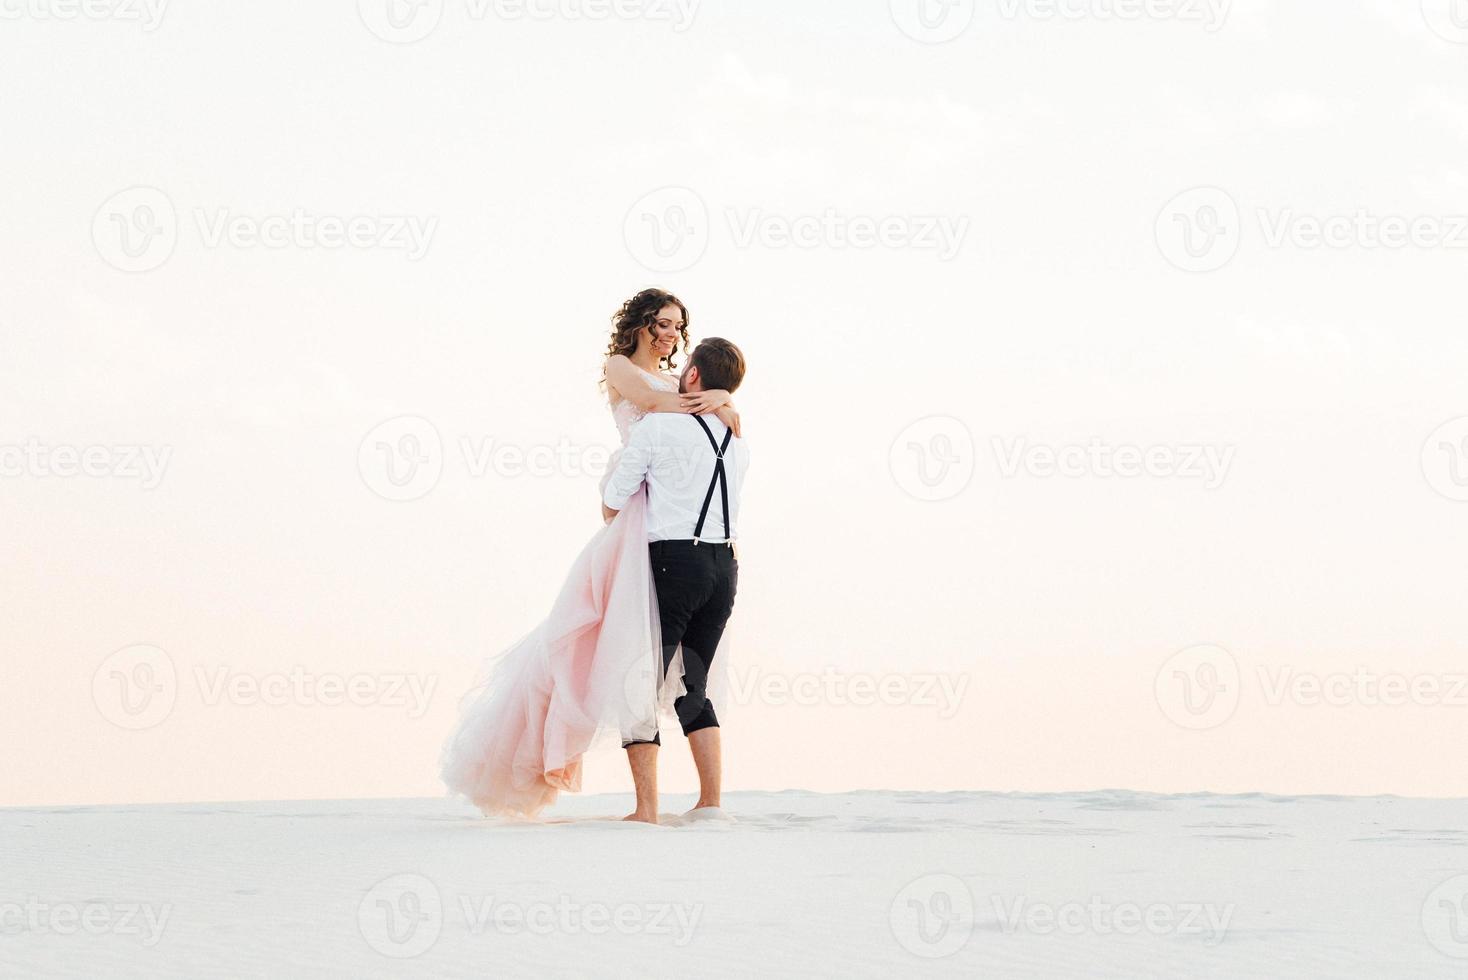 casal jovem um cara de calça preta e uma garota de vestido rosa estão caminhando na areia branca foto